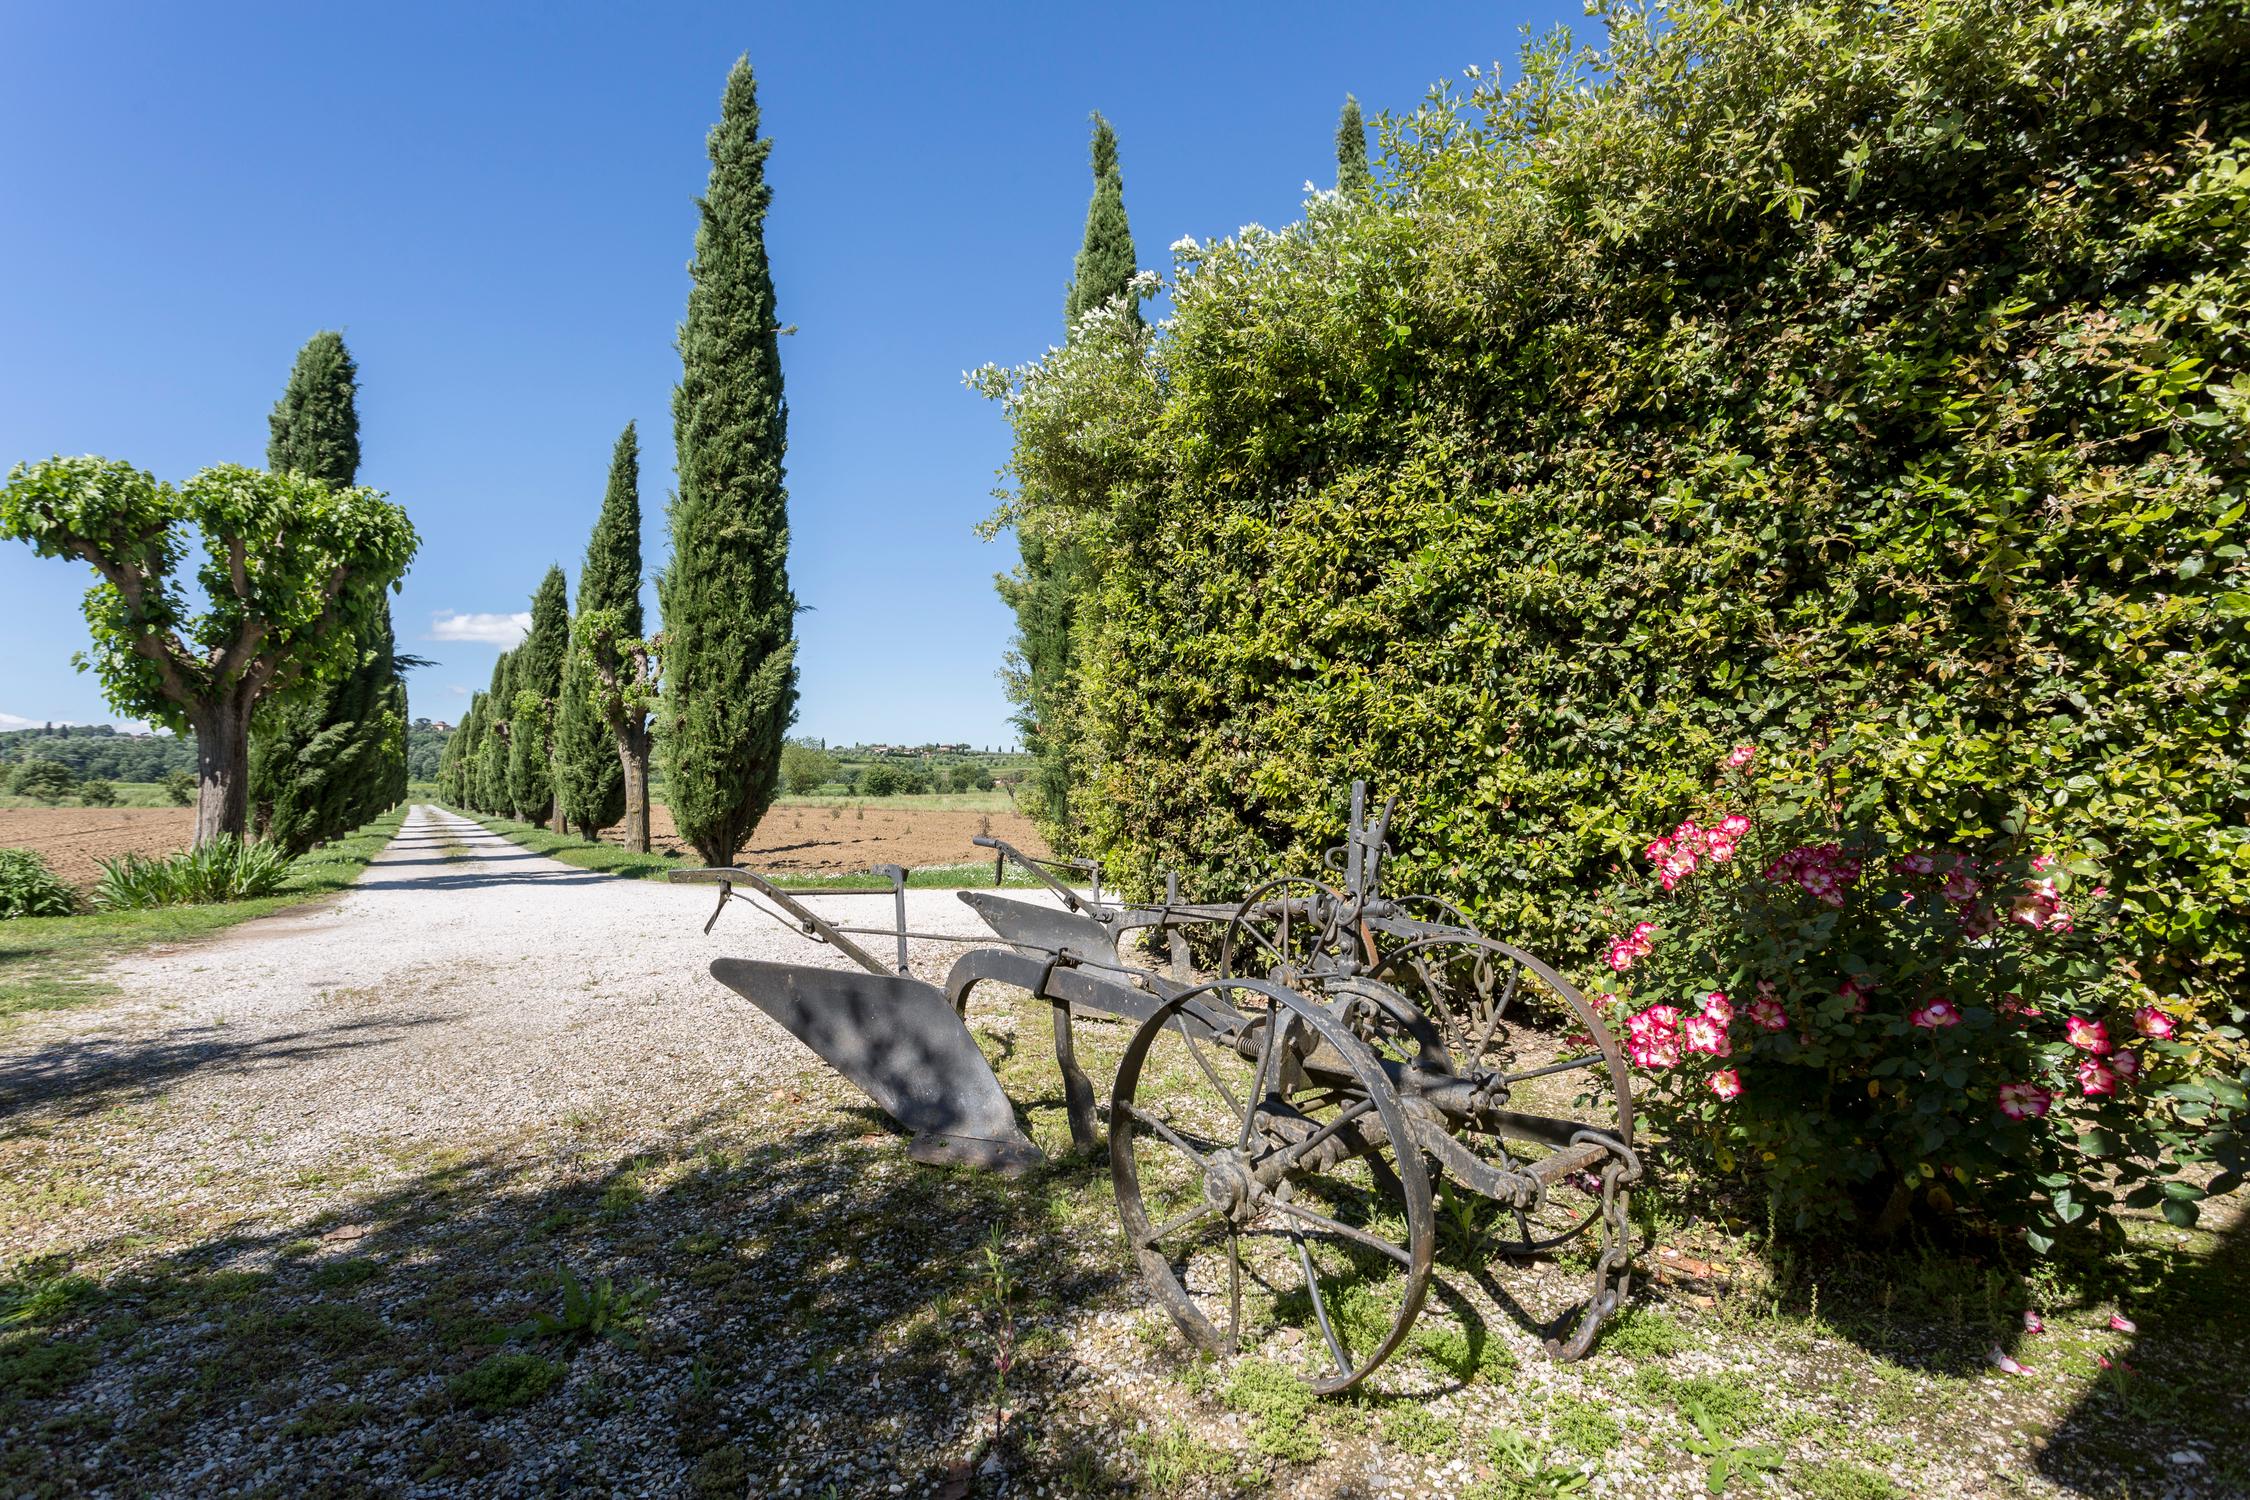 Casa Carlotta, Agriturismo dell’azienda agricola Lodovichi in Toscana